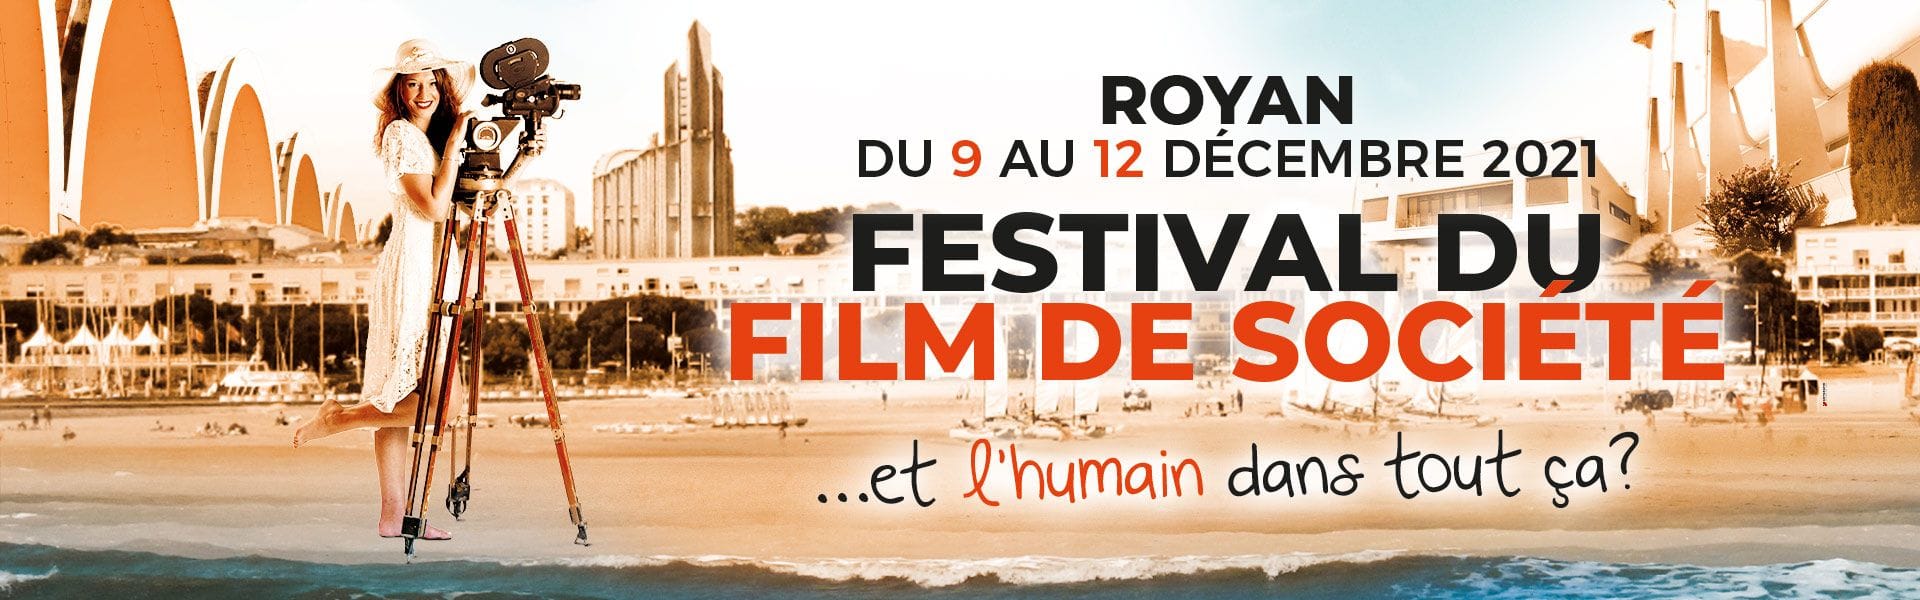 Festival du film de société de Royan 2021 affiche cinéma